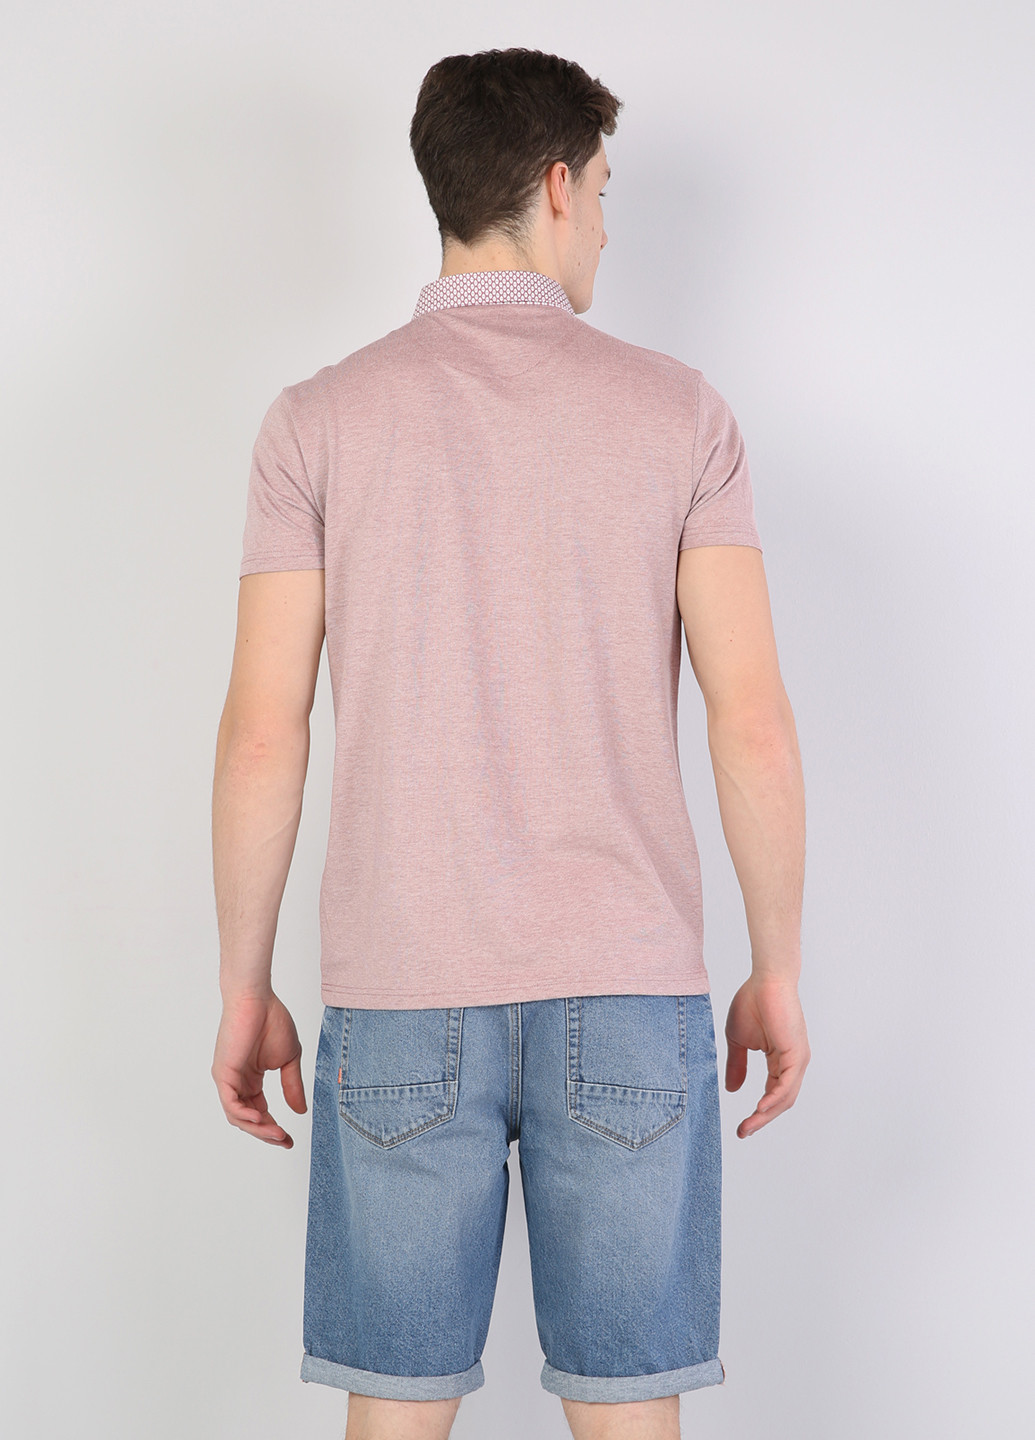 Розовая футболка-поло для мужчин Colin's меланжевая